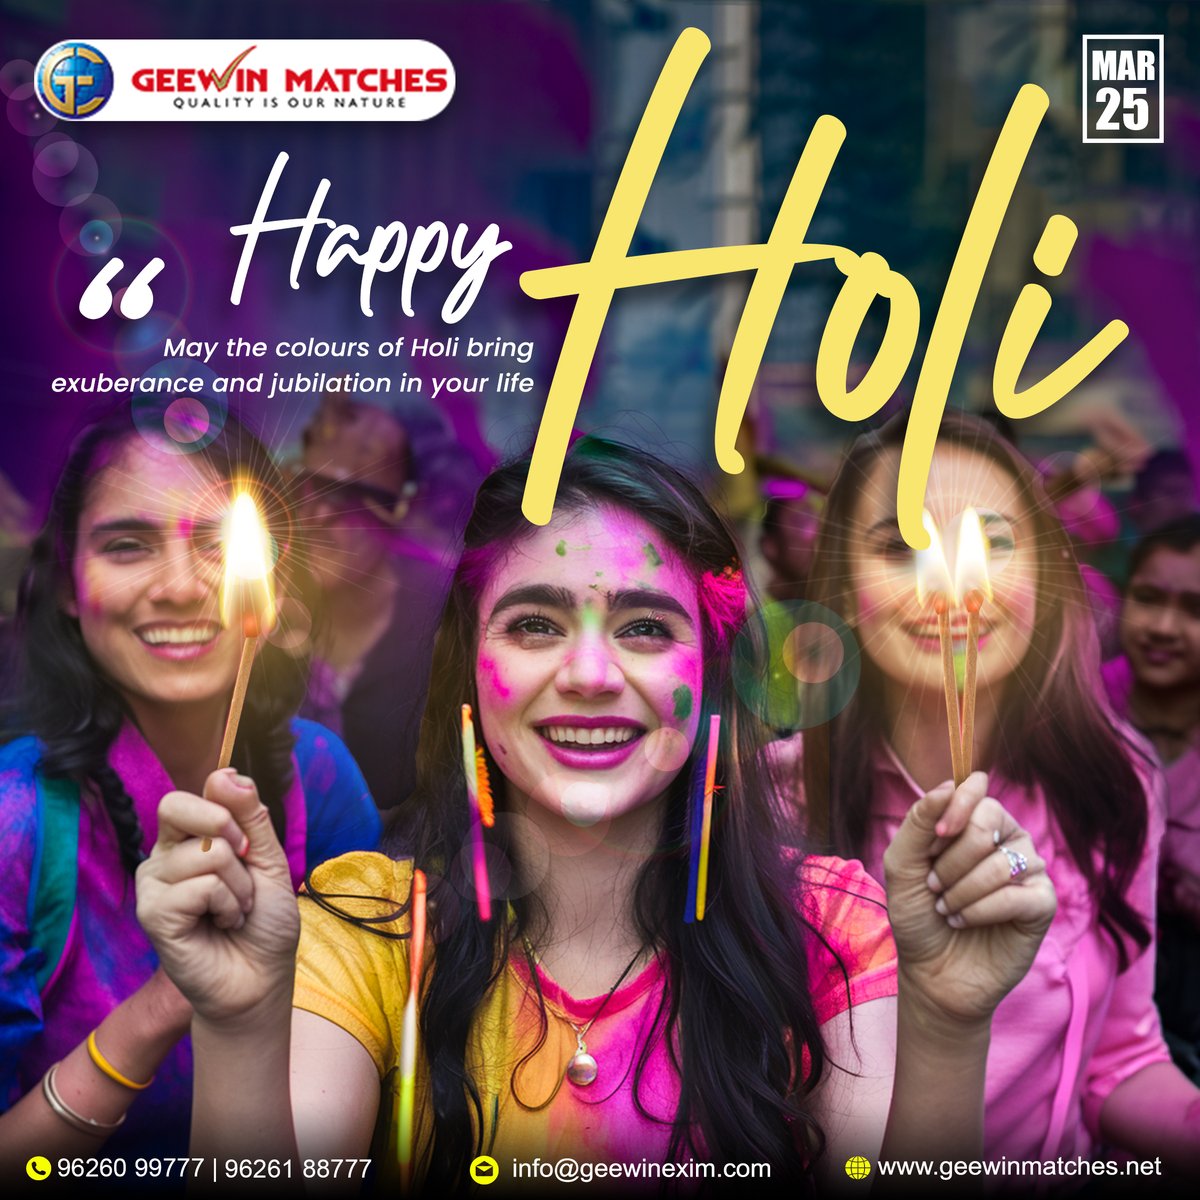 Wishing you a colorful and joyful Holi celebration with Geewin Matches! 

#holi2024 #holisong2024 #holikadahan2024 #festivalofcolors #India #CultureUnitesAll  #holidayseason2024 #holisticharmony2024 #holihamper2024 #HoliFestival #happyholi2024 #2024holidays #होली #GeewinMatches